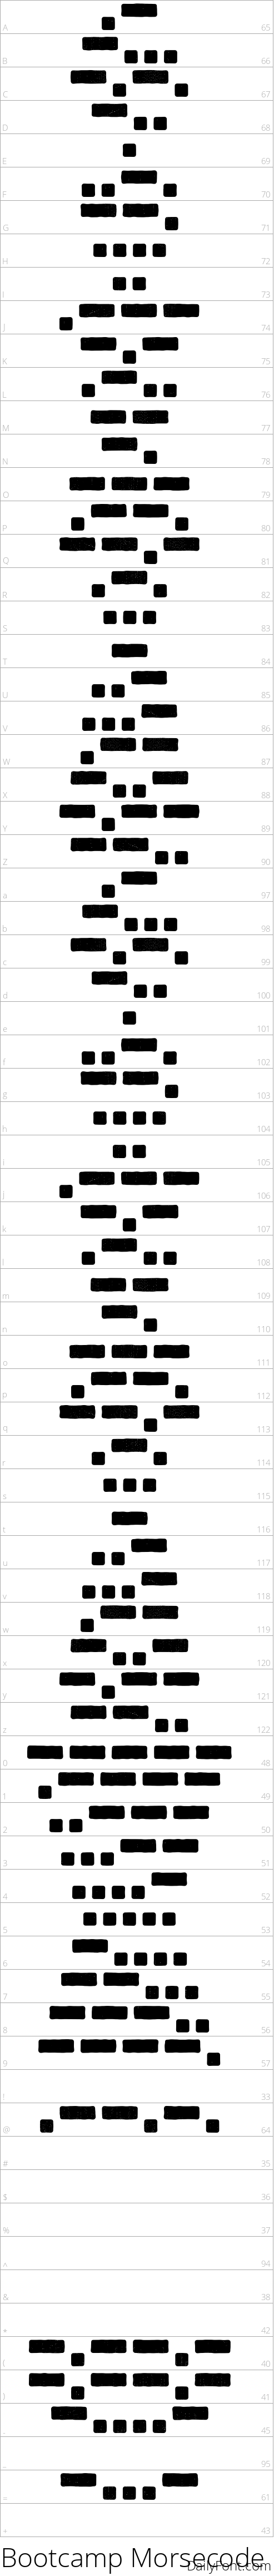 Bootcamp Morsecode character map